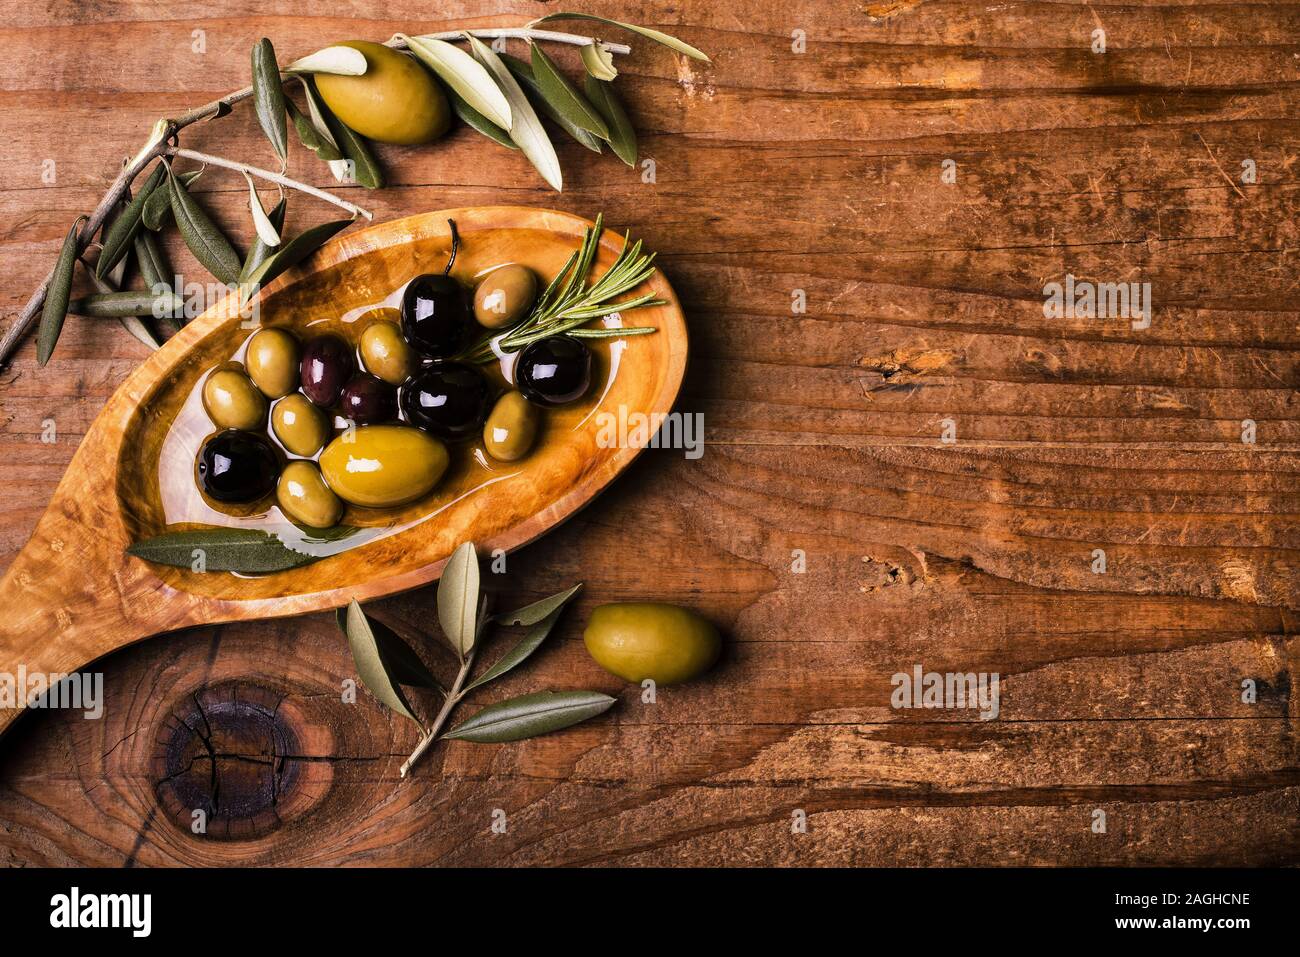 Sur la table de bois rustique, un bol avec différents types d'olives Banque D'Images